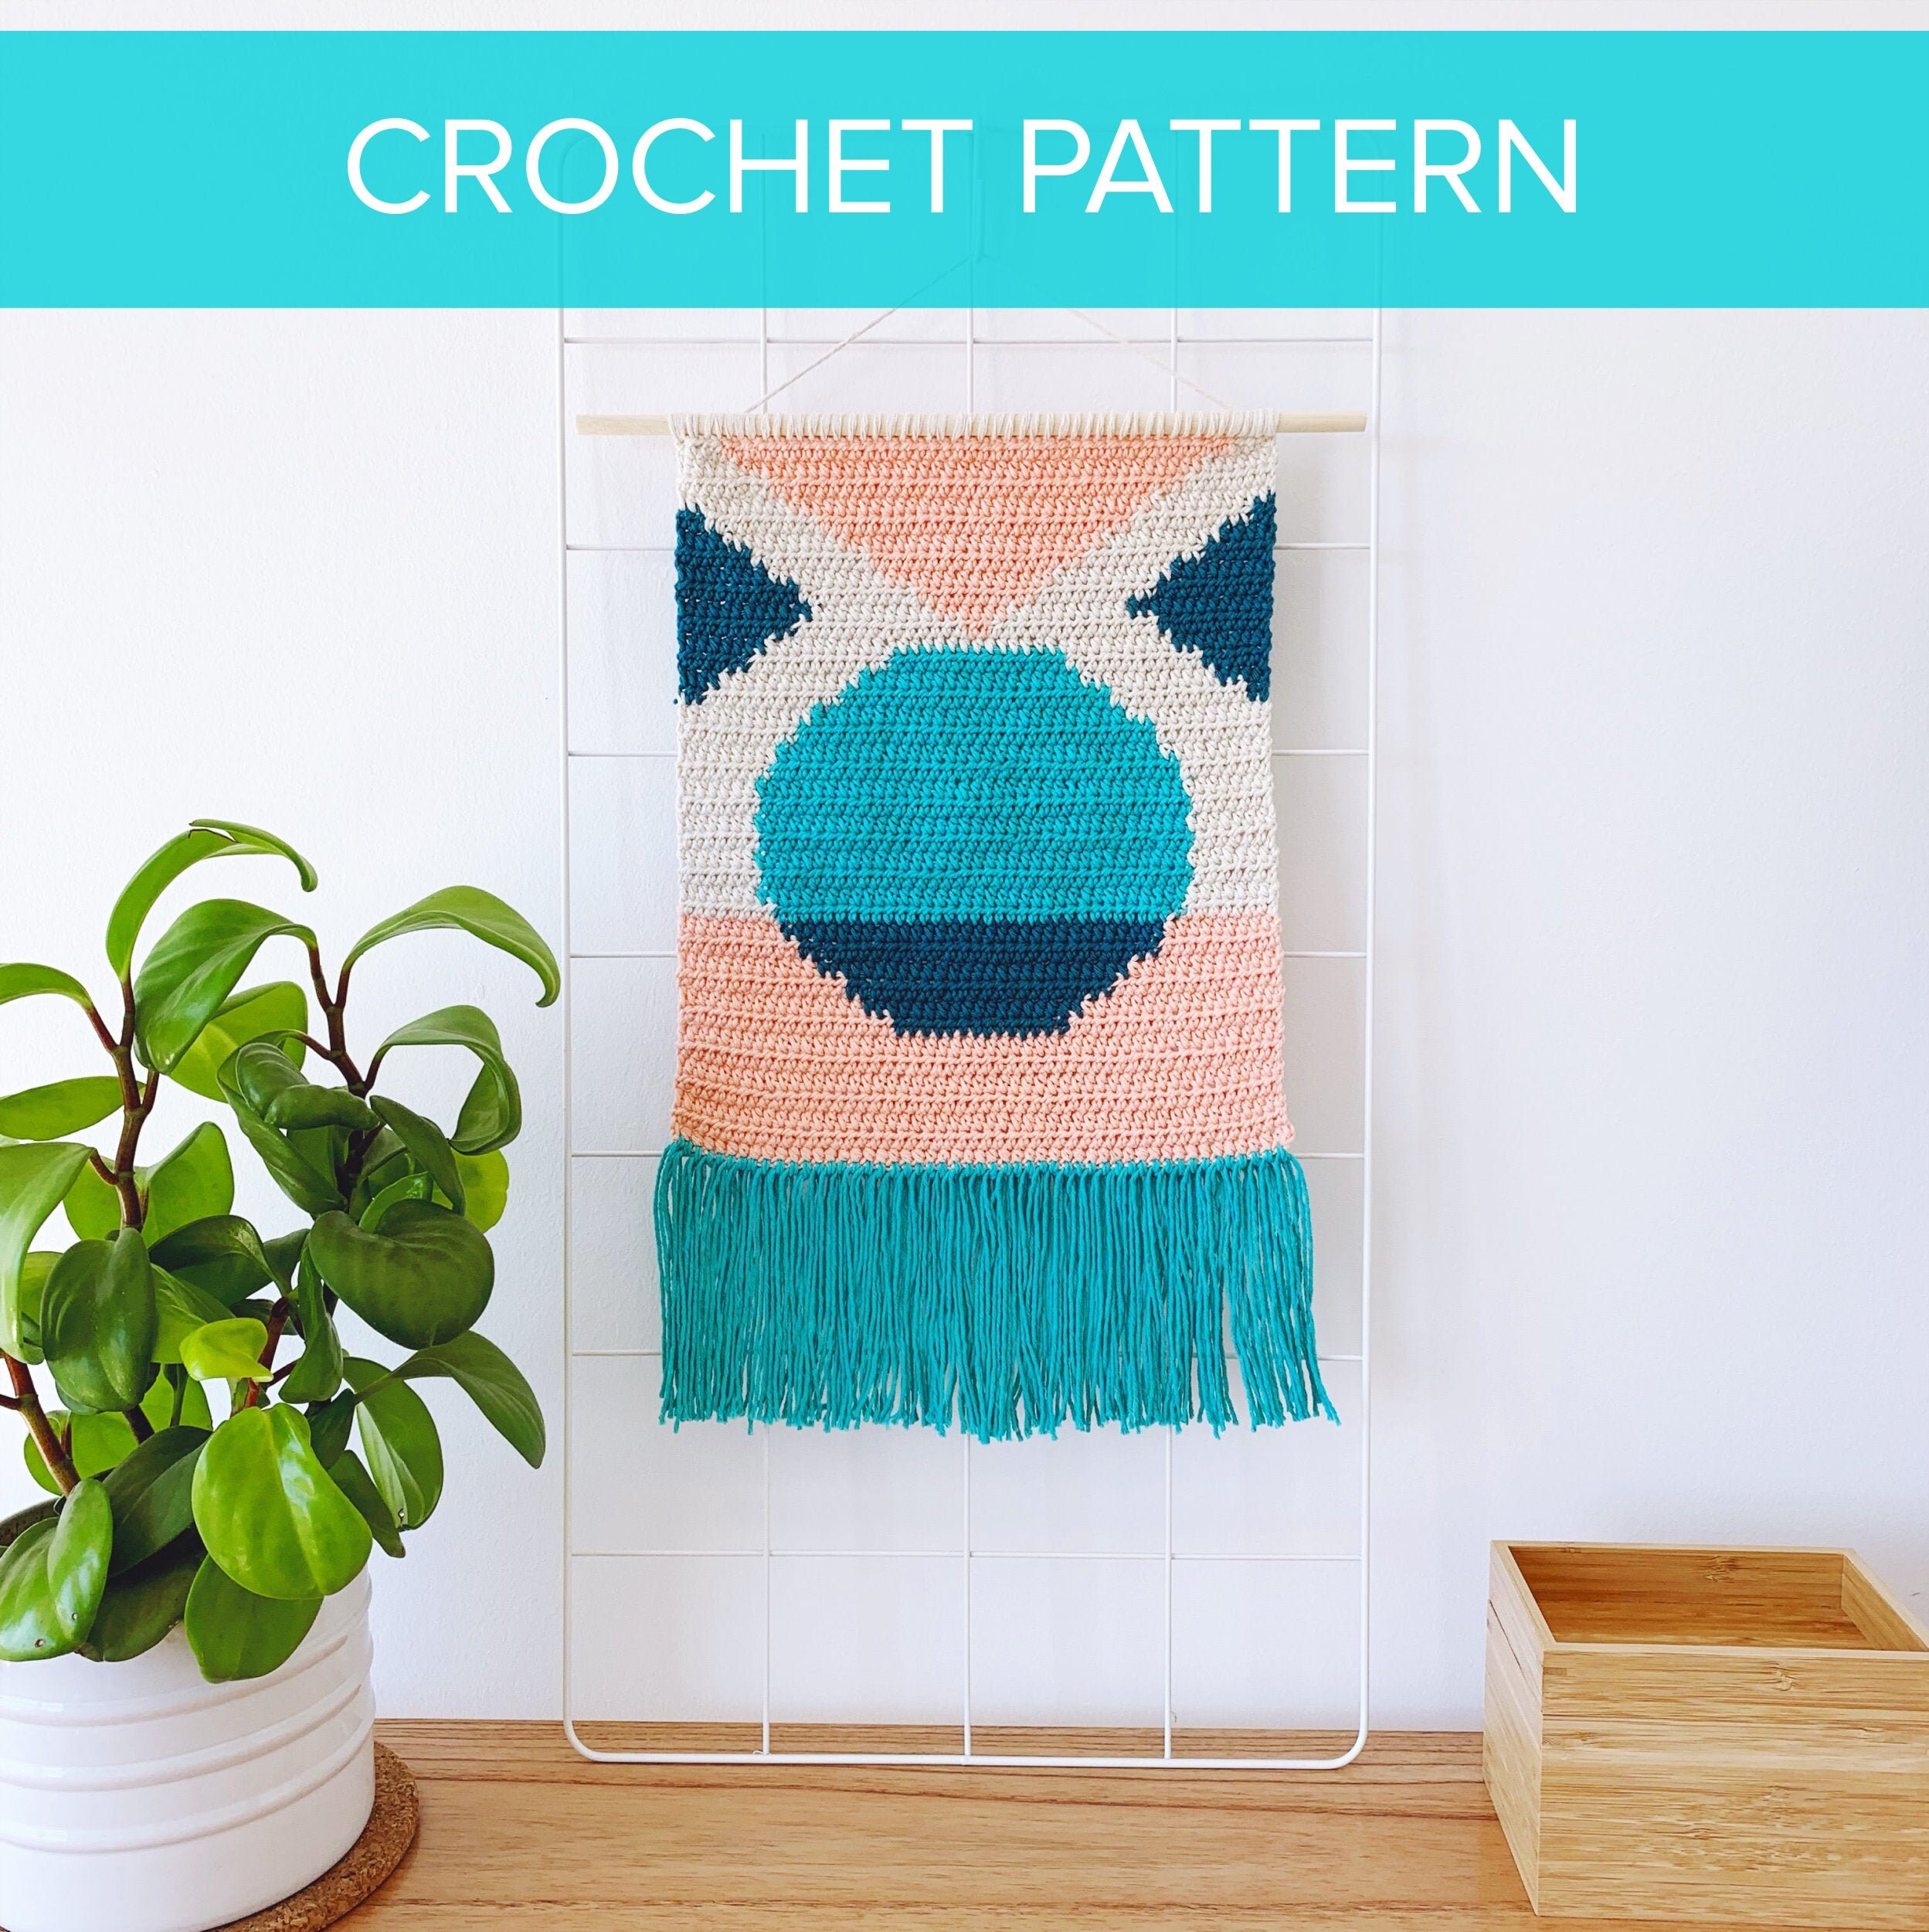 Boho Book Nook Crochet Pattern, Crochet Wall Hanging Pattern